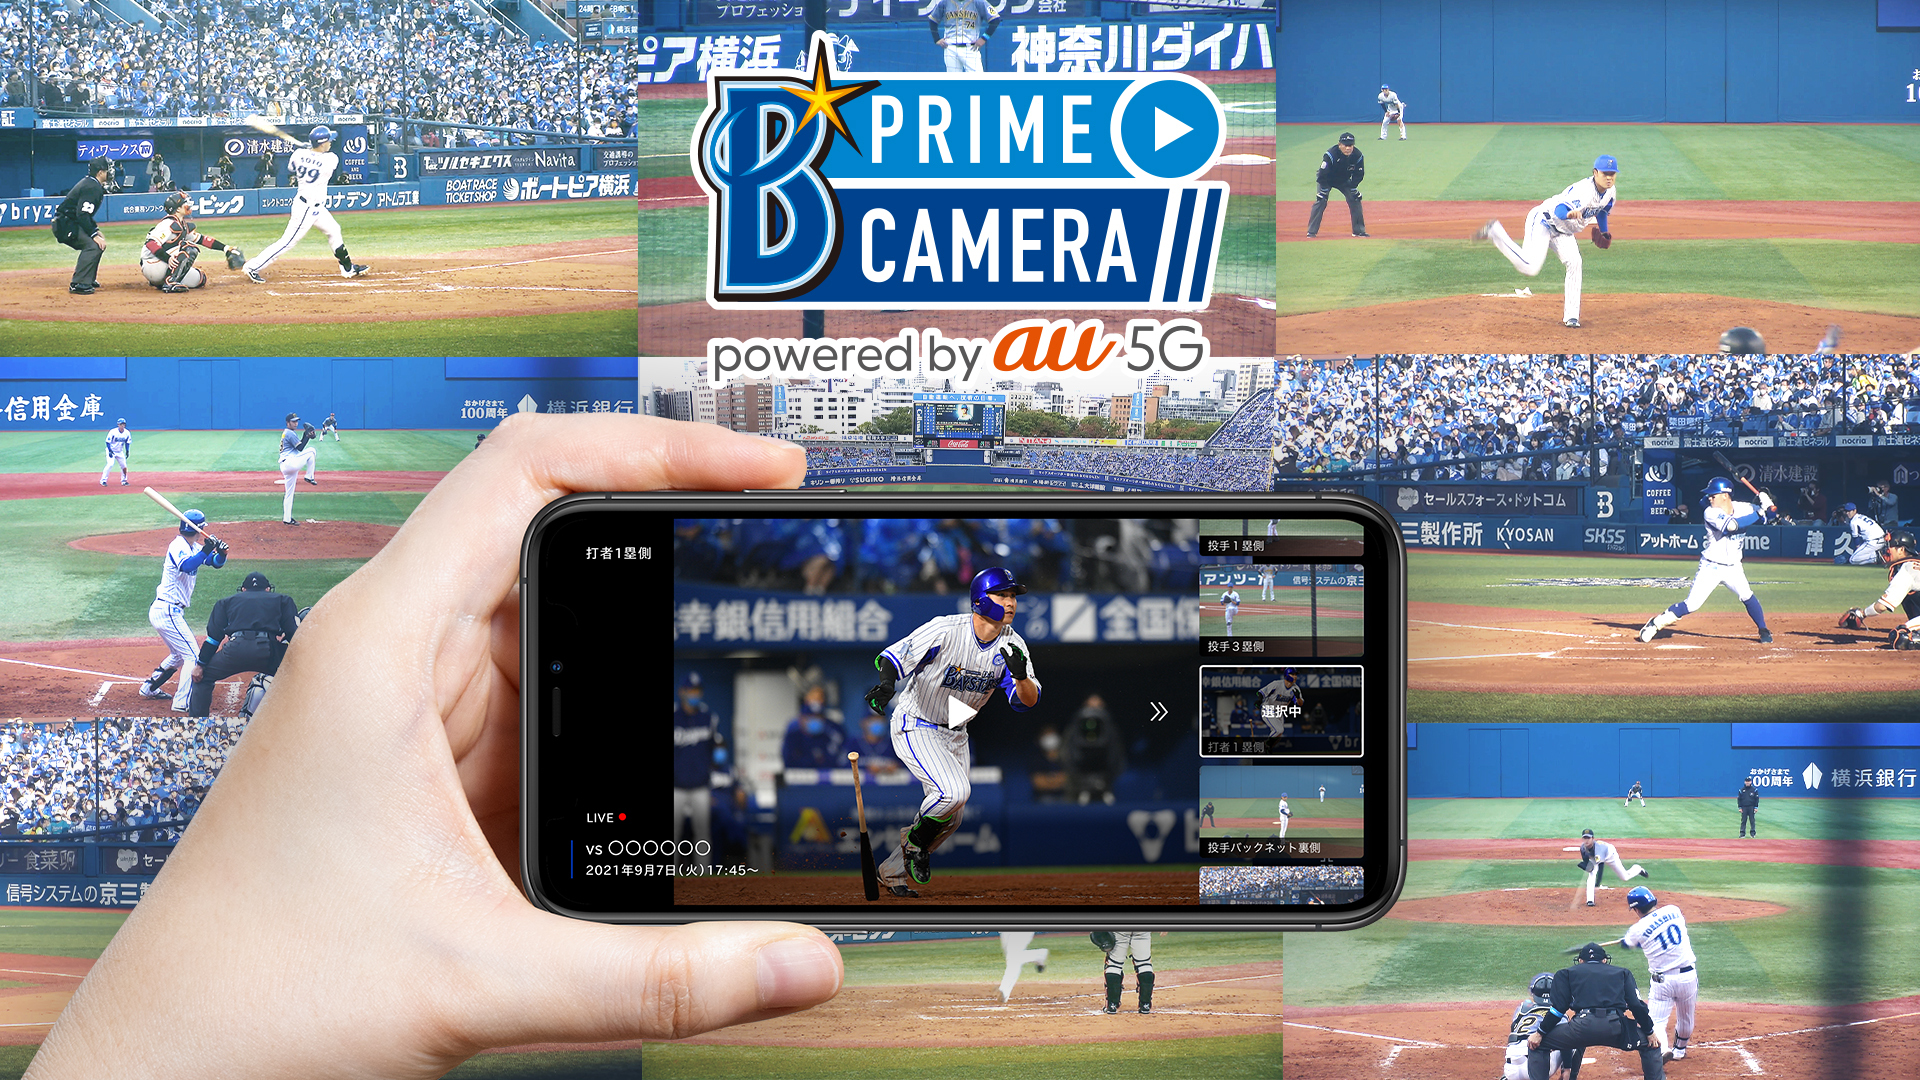 推し が見たい シフトが知りたい を叶える新アプリ ベイスターズプライムカメラ が誕生 Baseball King